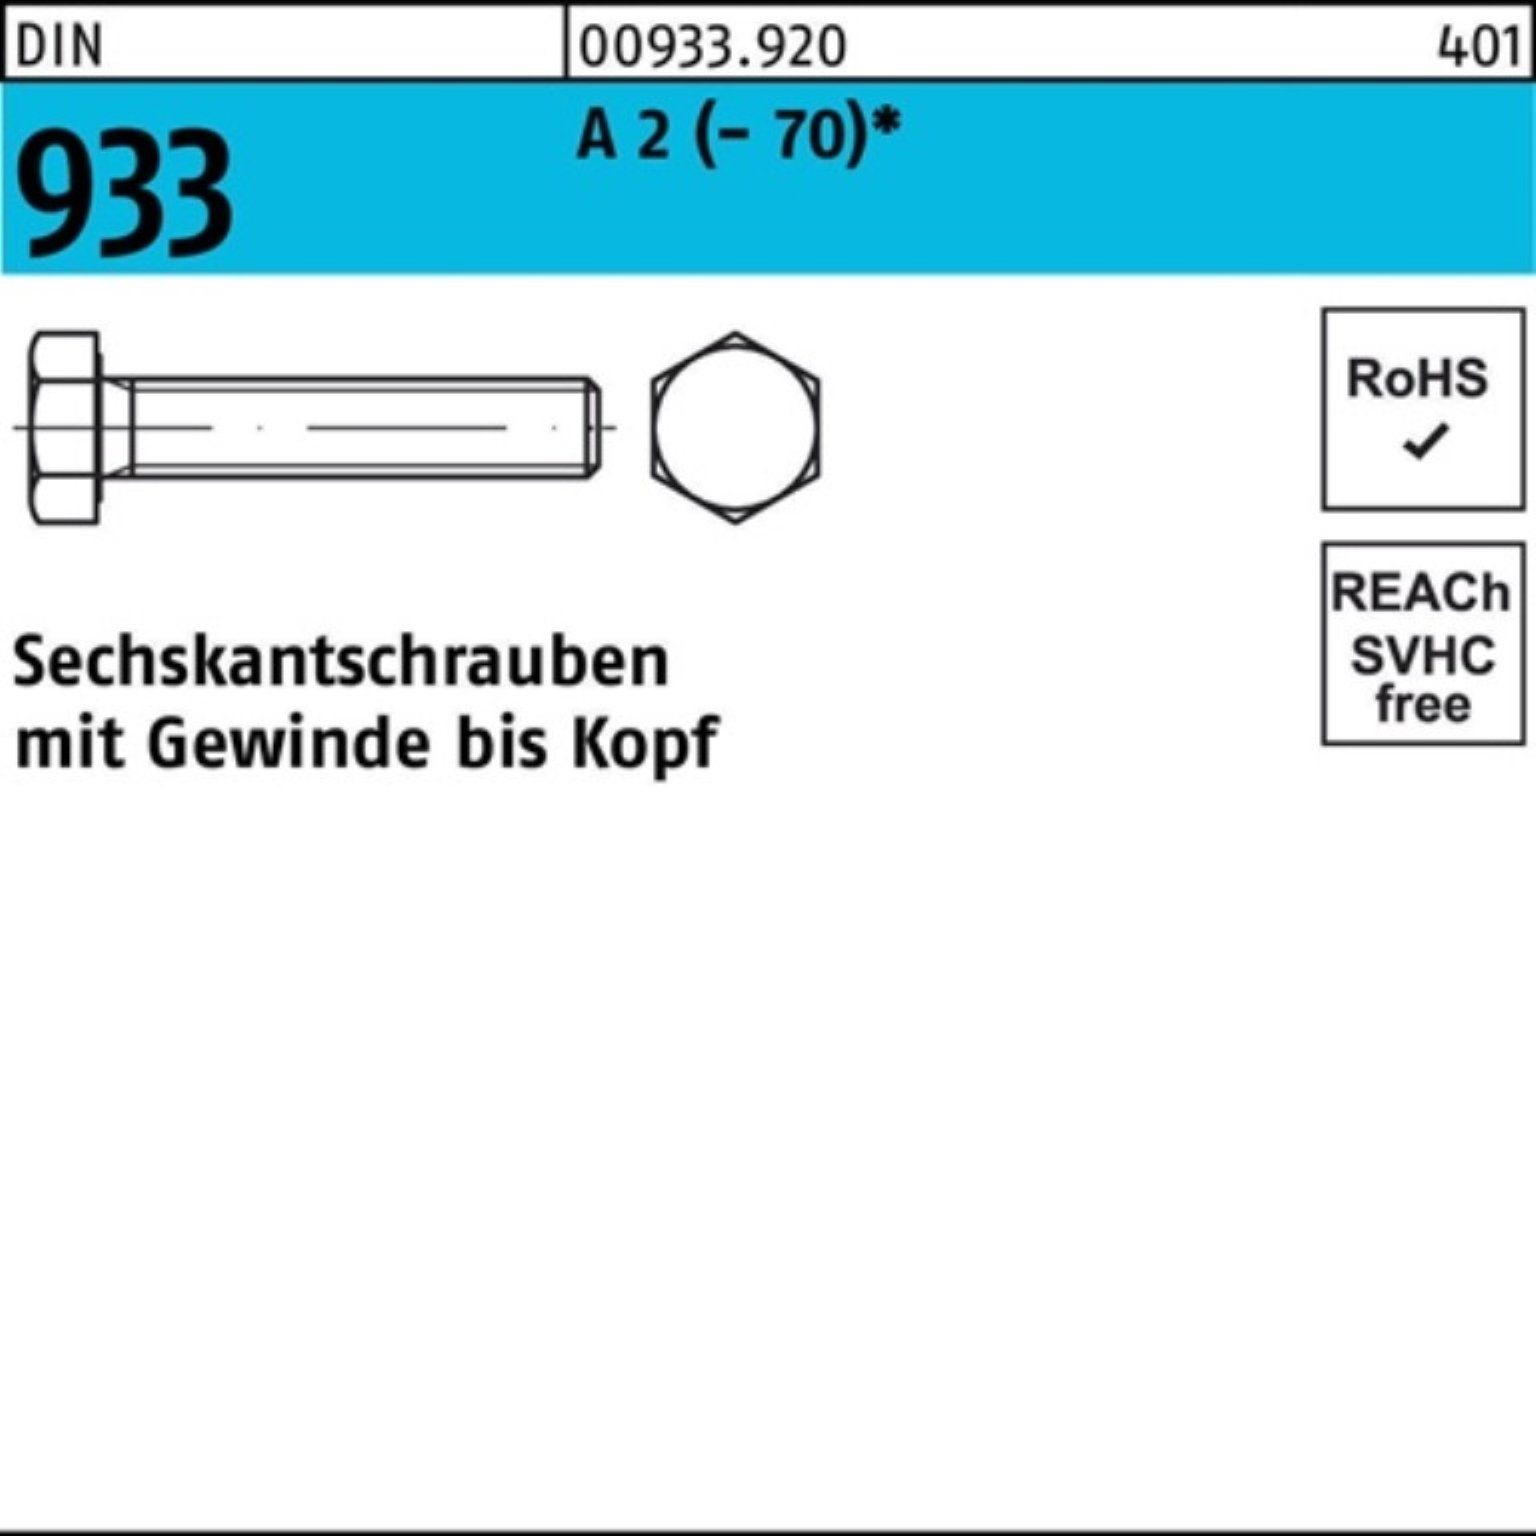 Reyher Sechskantschraube 100er Pack 2 M20x A (70) Stück 933 Sechskantschraube VG 25 DIN D 85